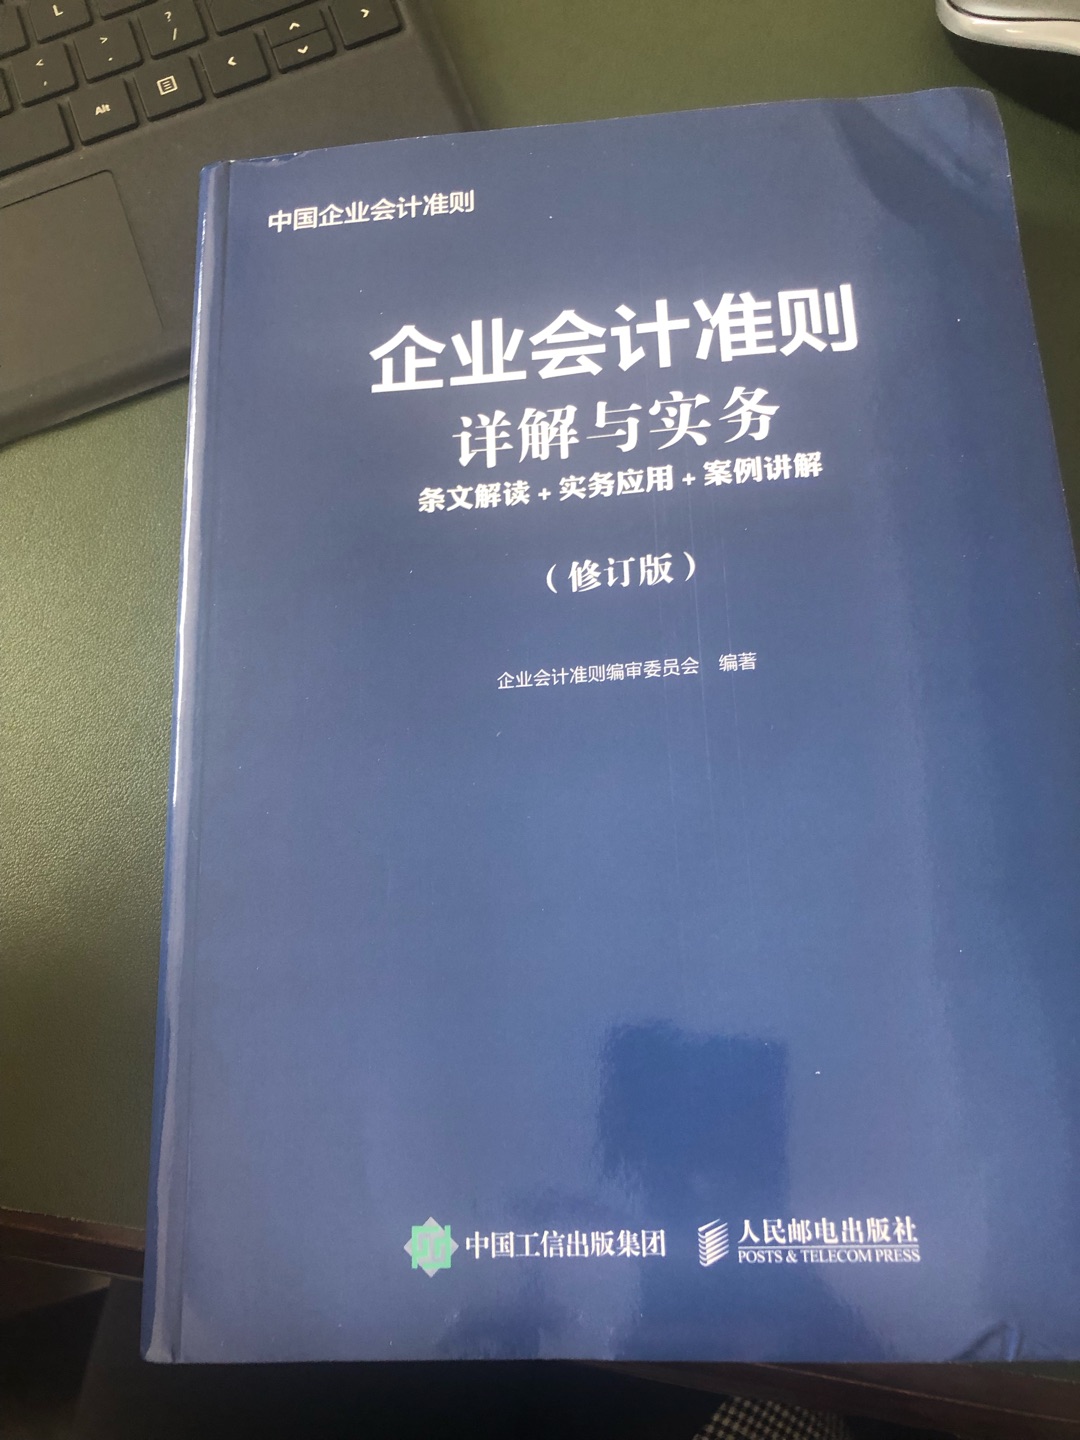 书的质量很好，是中国工信出版集团和人民邮电出版社同共出版的，做为工具书非常好。